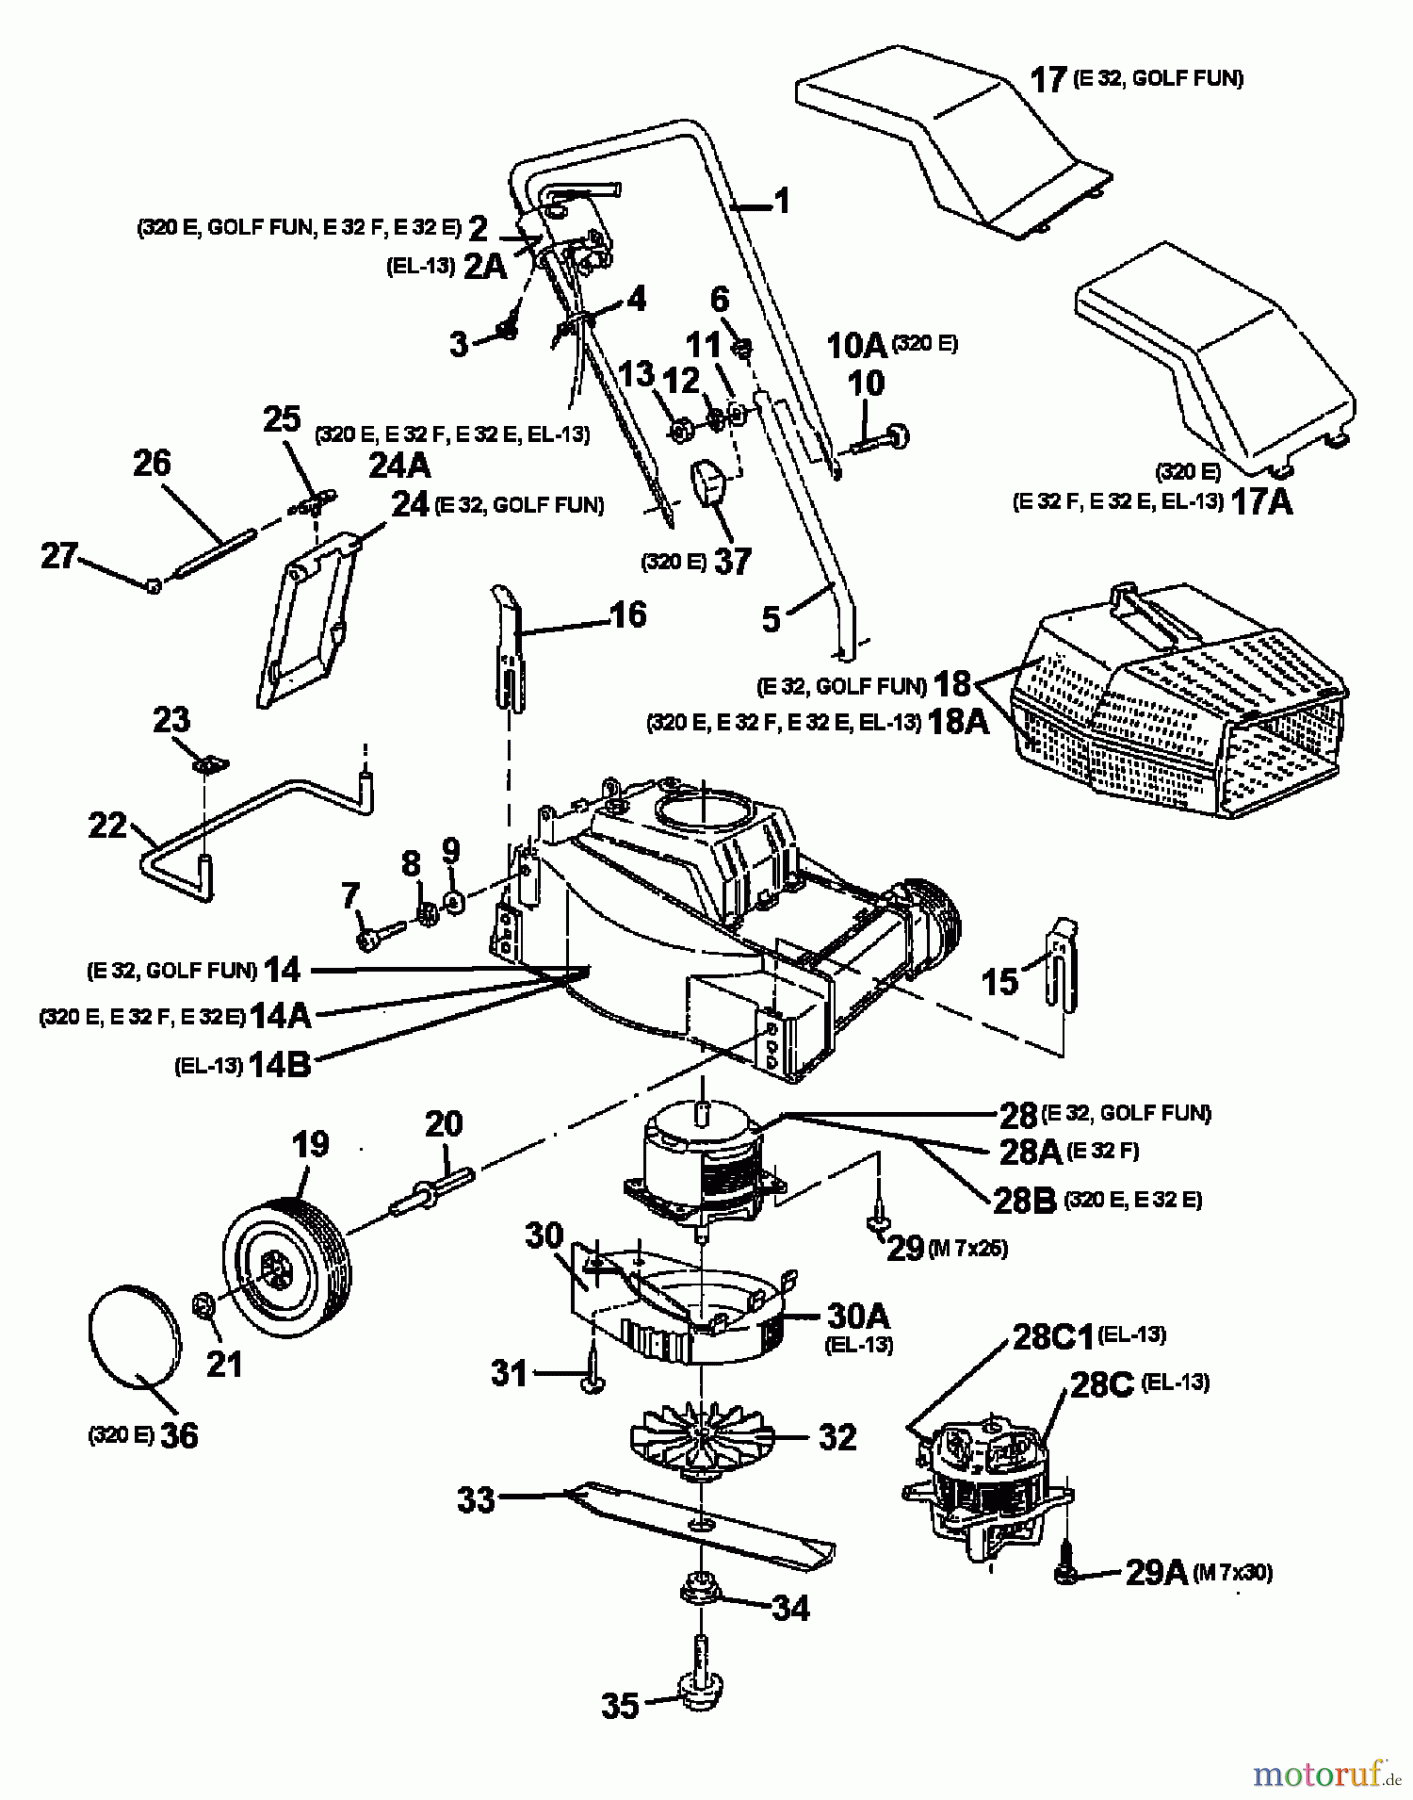  MTD Elektromäher E 32 F 18A-A0B-678  (1998) Grundgerät